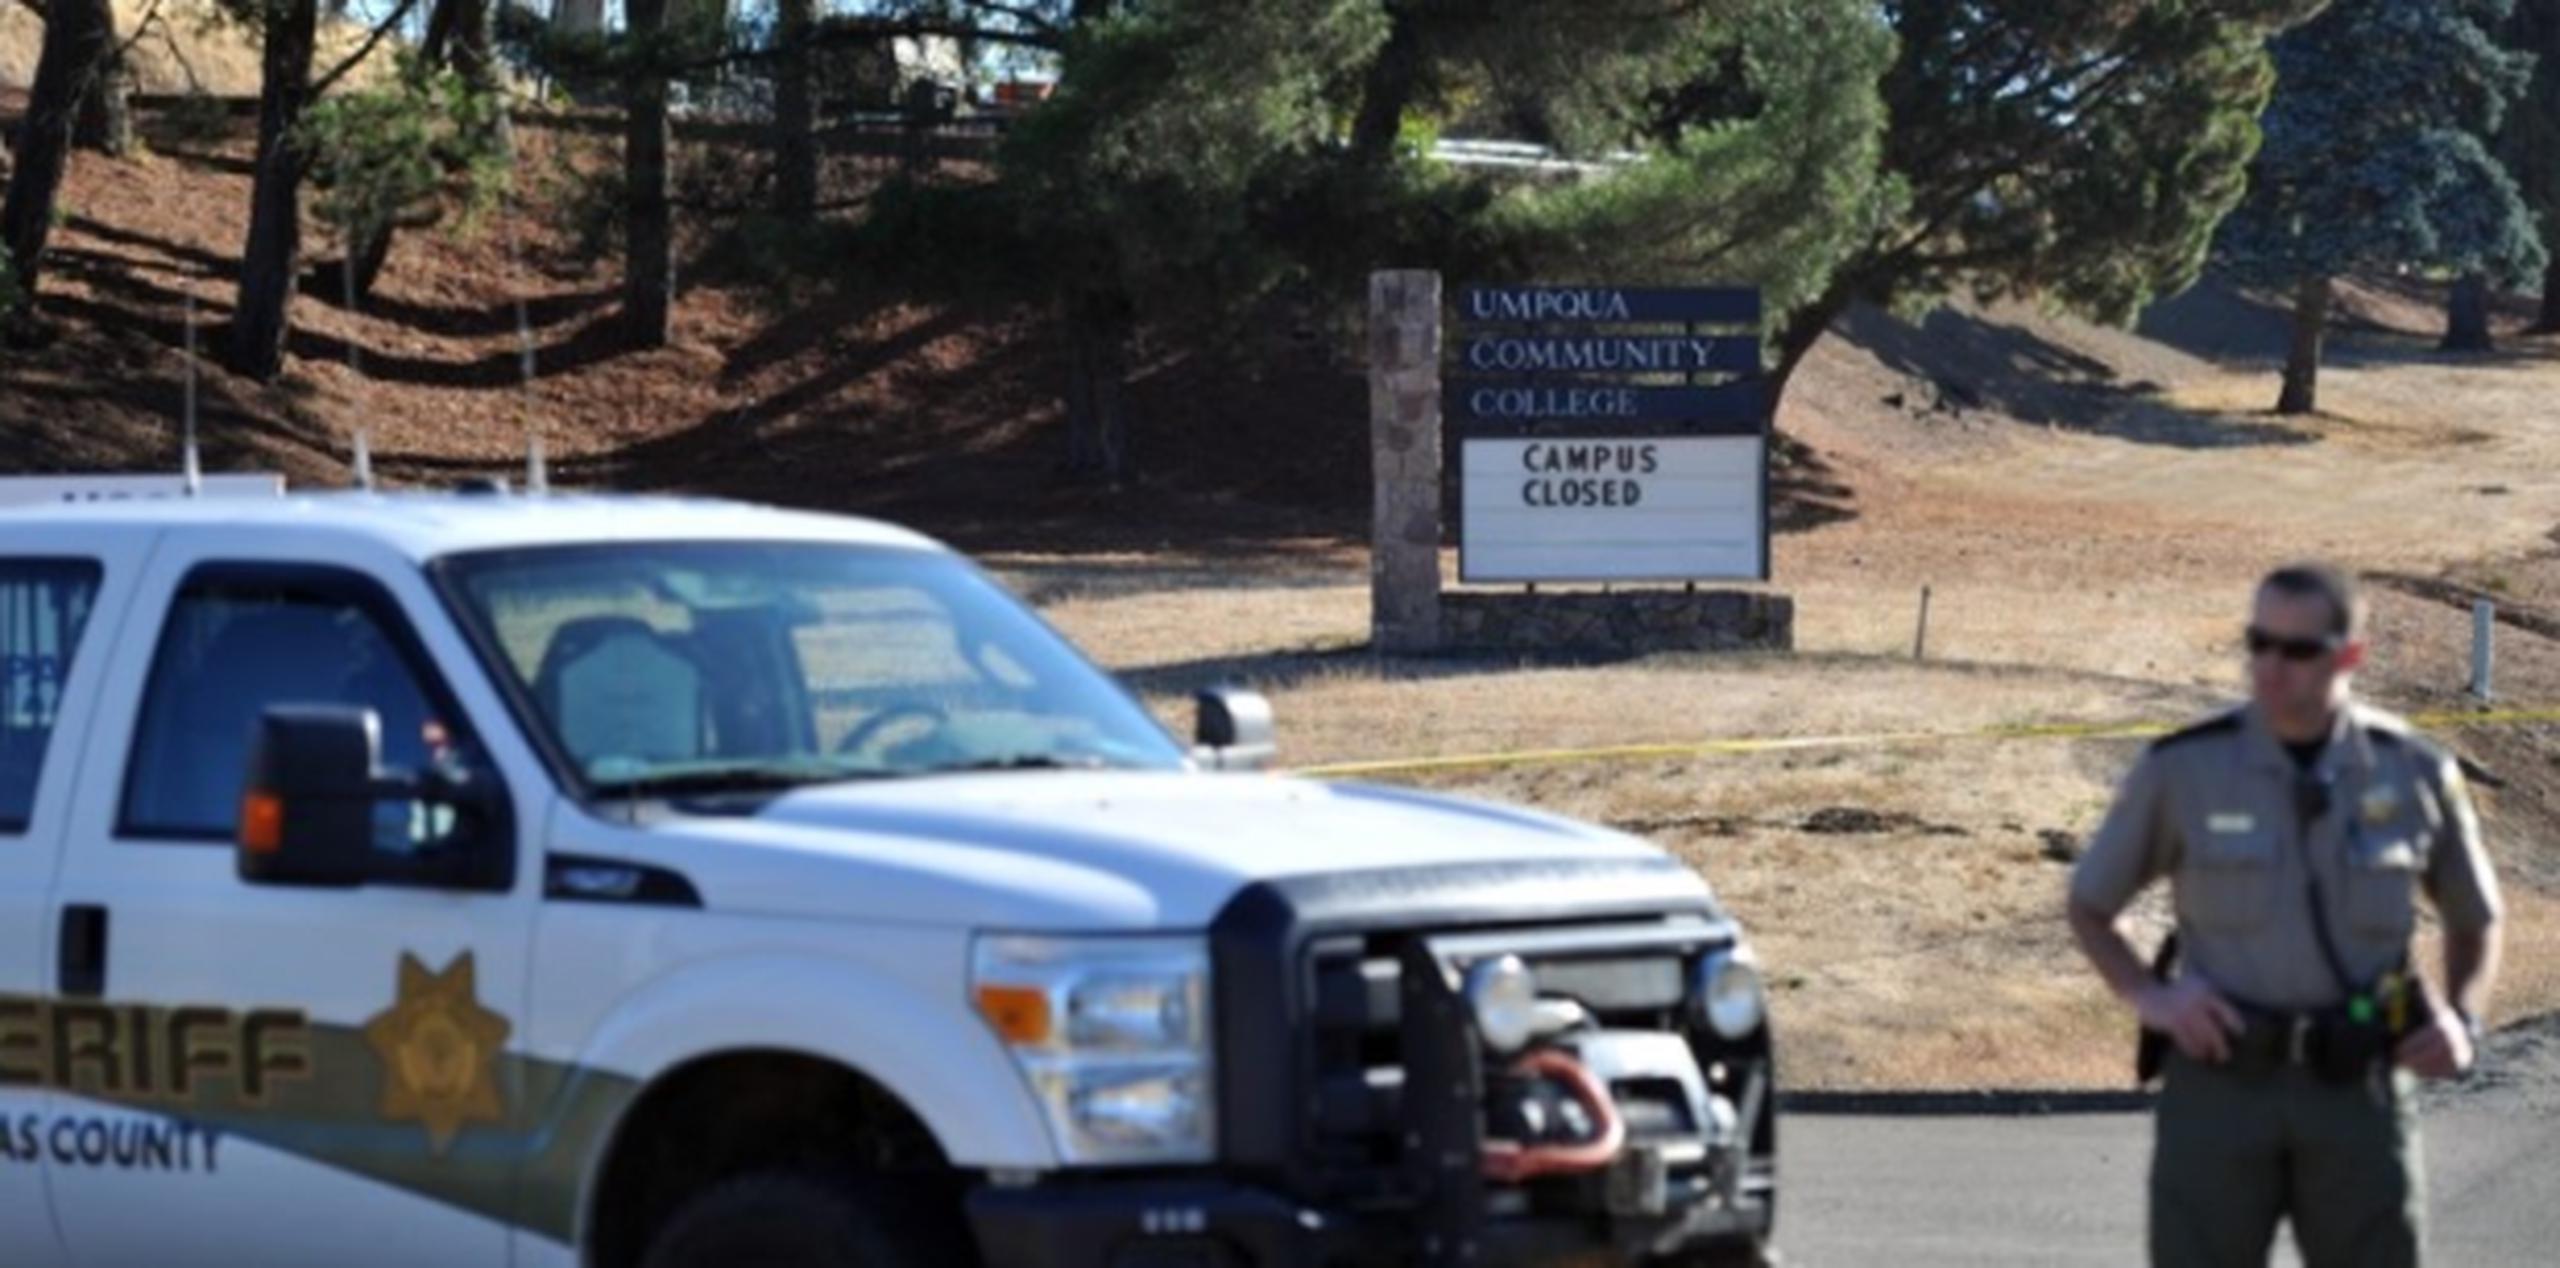 El anuncio coincide con la trágica balacera en un colegio de Oregon donde murieron 10 personas ocurrido la semana pasada. (AFP)